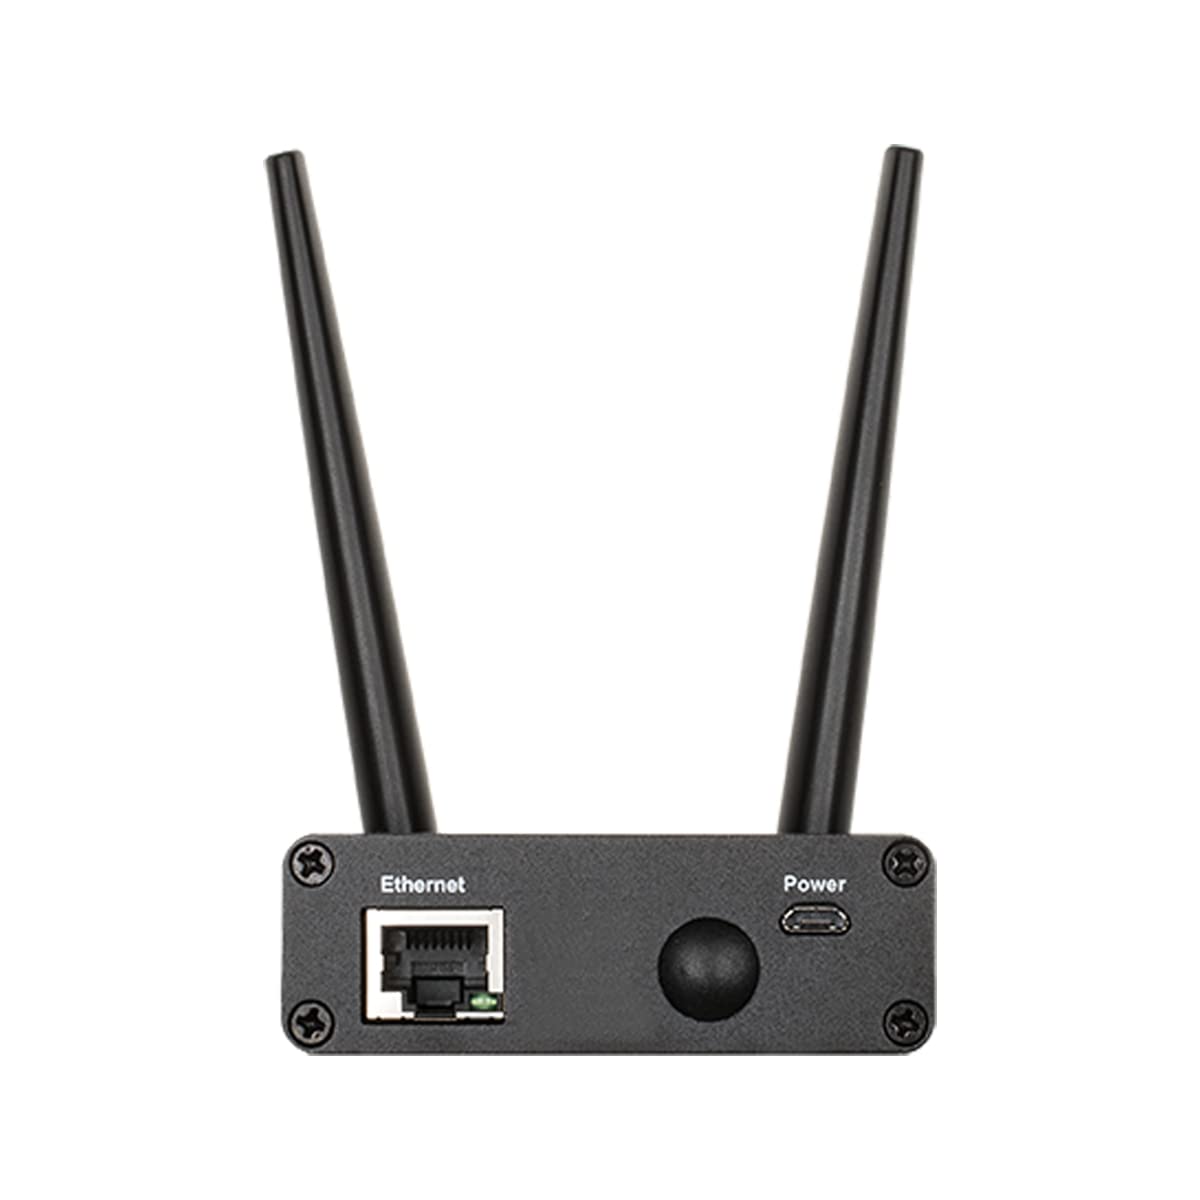 D-Link DWM-311-B1, 4G LTE (Cat 4) to Gigabit Ethernet Modem/Bridge, Best for M2M Applications, Supports OpenVPN, Optional Enterprise Service Platform, Works on Verizon or AT&T,Black